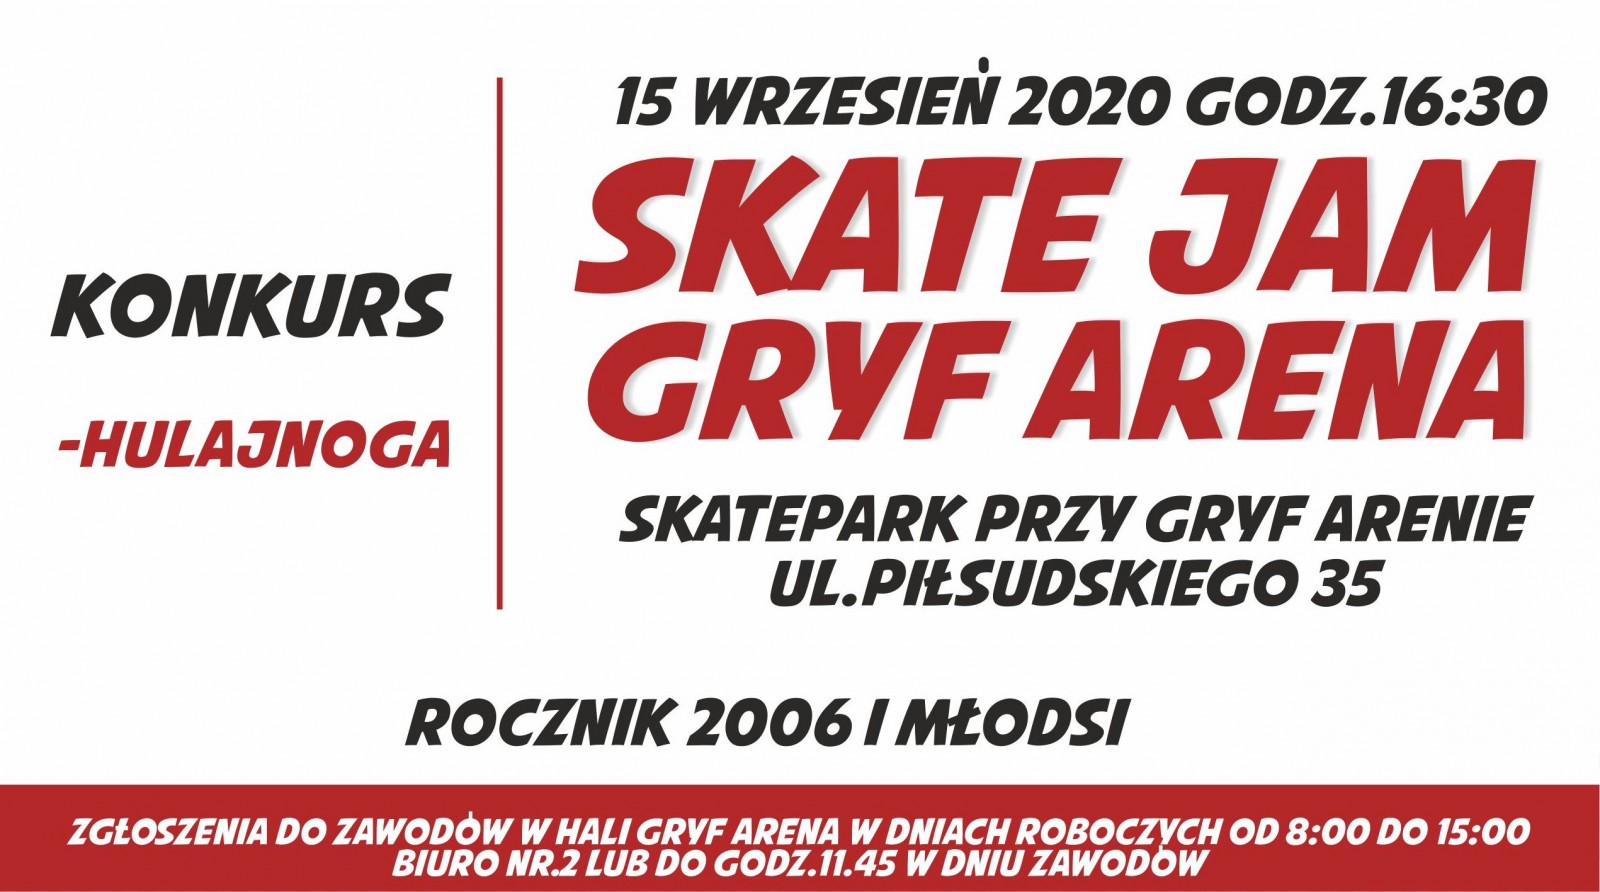 Ponowne zapisy do udziału w zawodach na skateparku przy Gryf Arenie